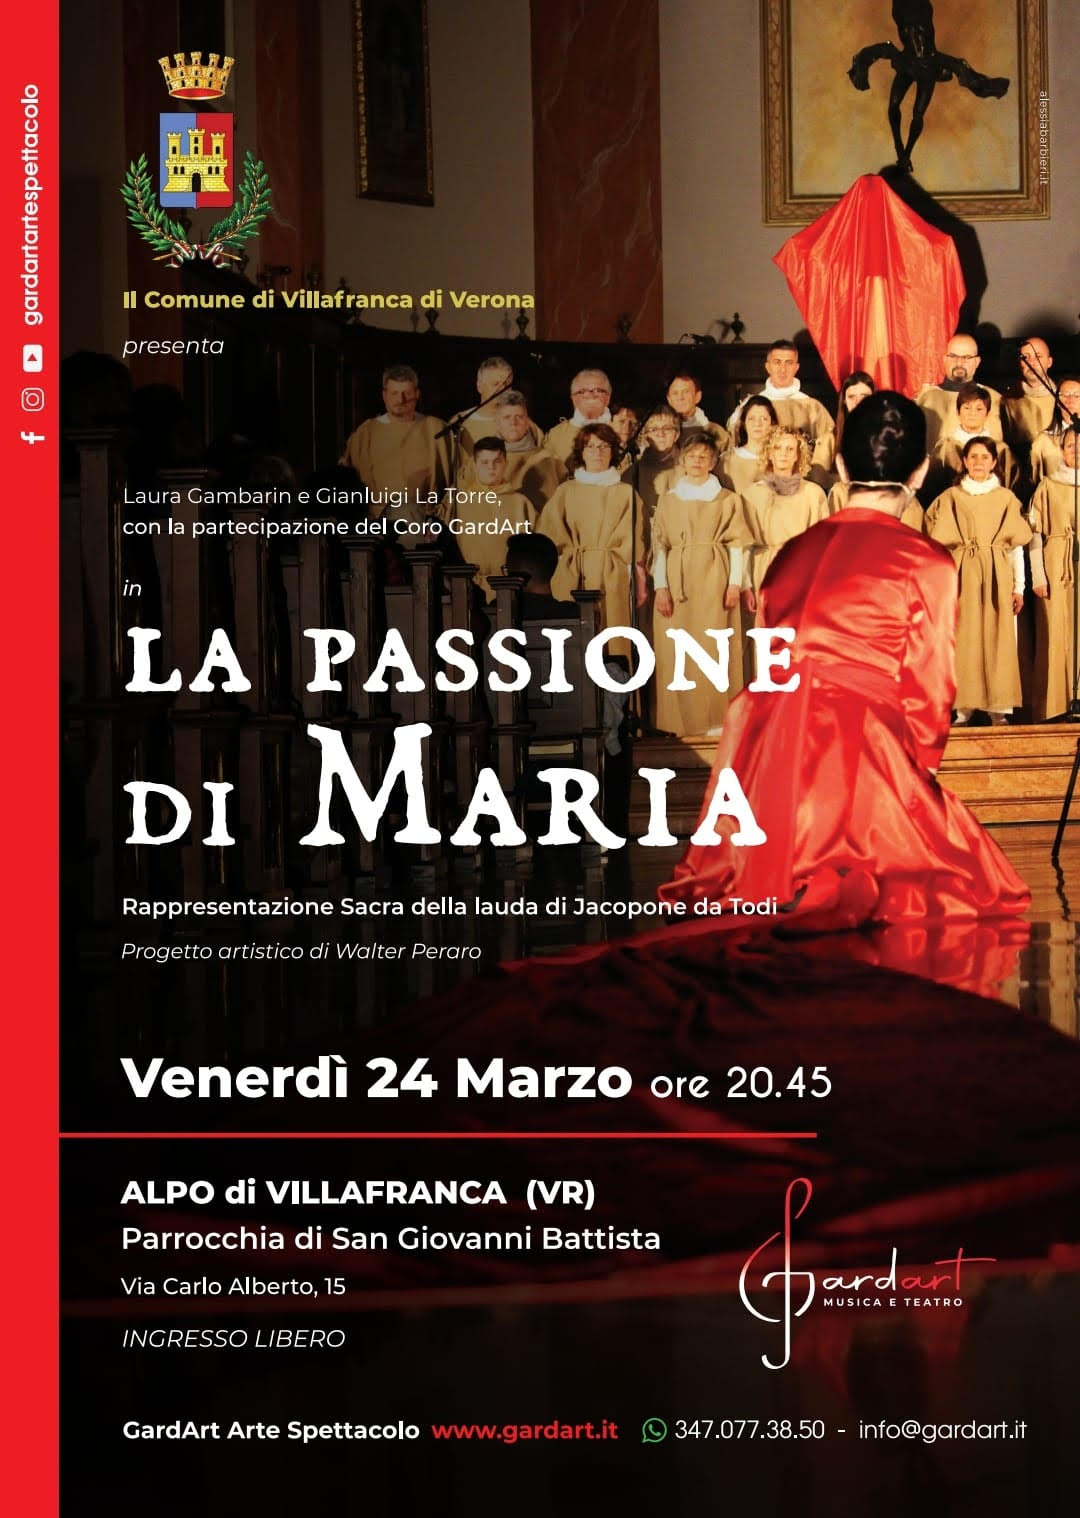 La passione di Maria domani sera alla Parrocchia di San Giovanni all’Alpo di Villafranca